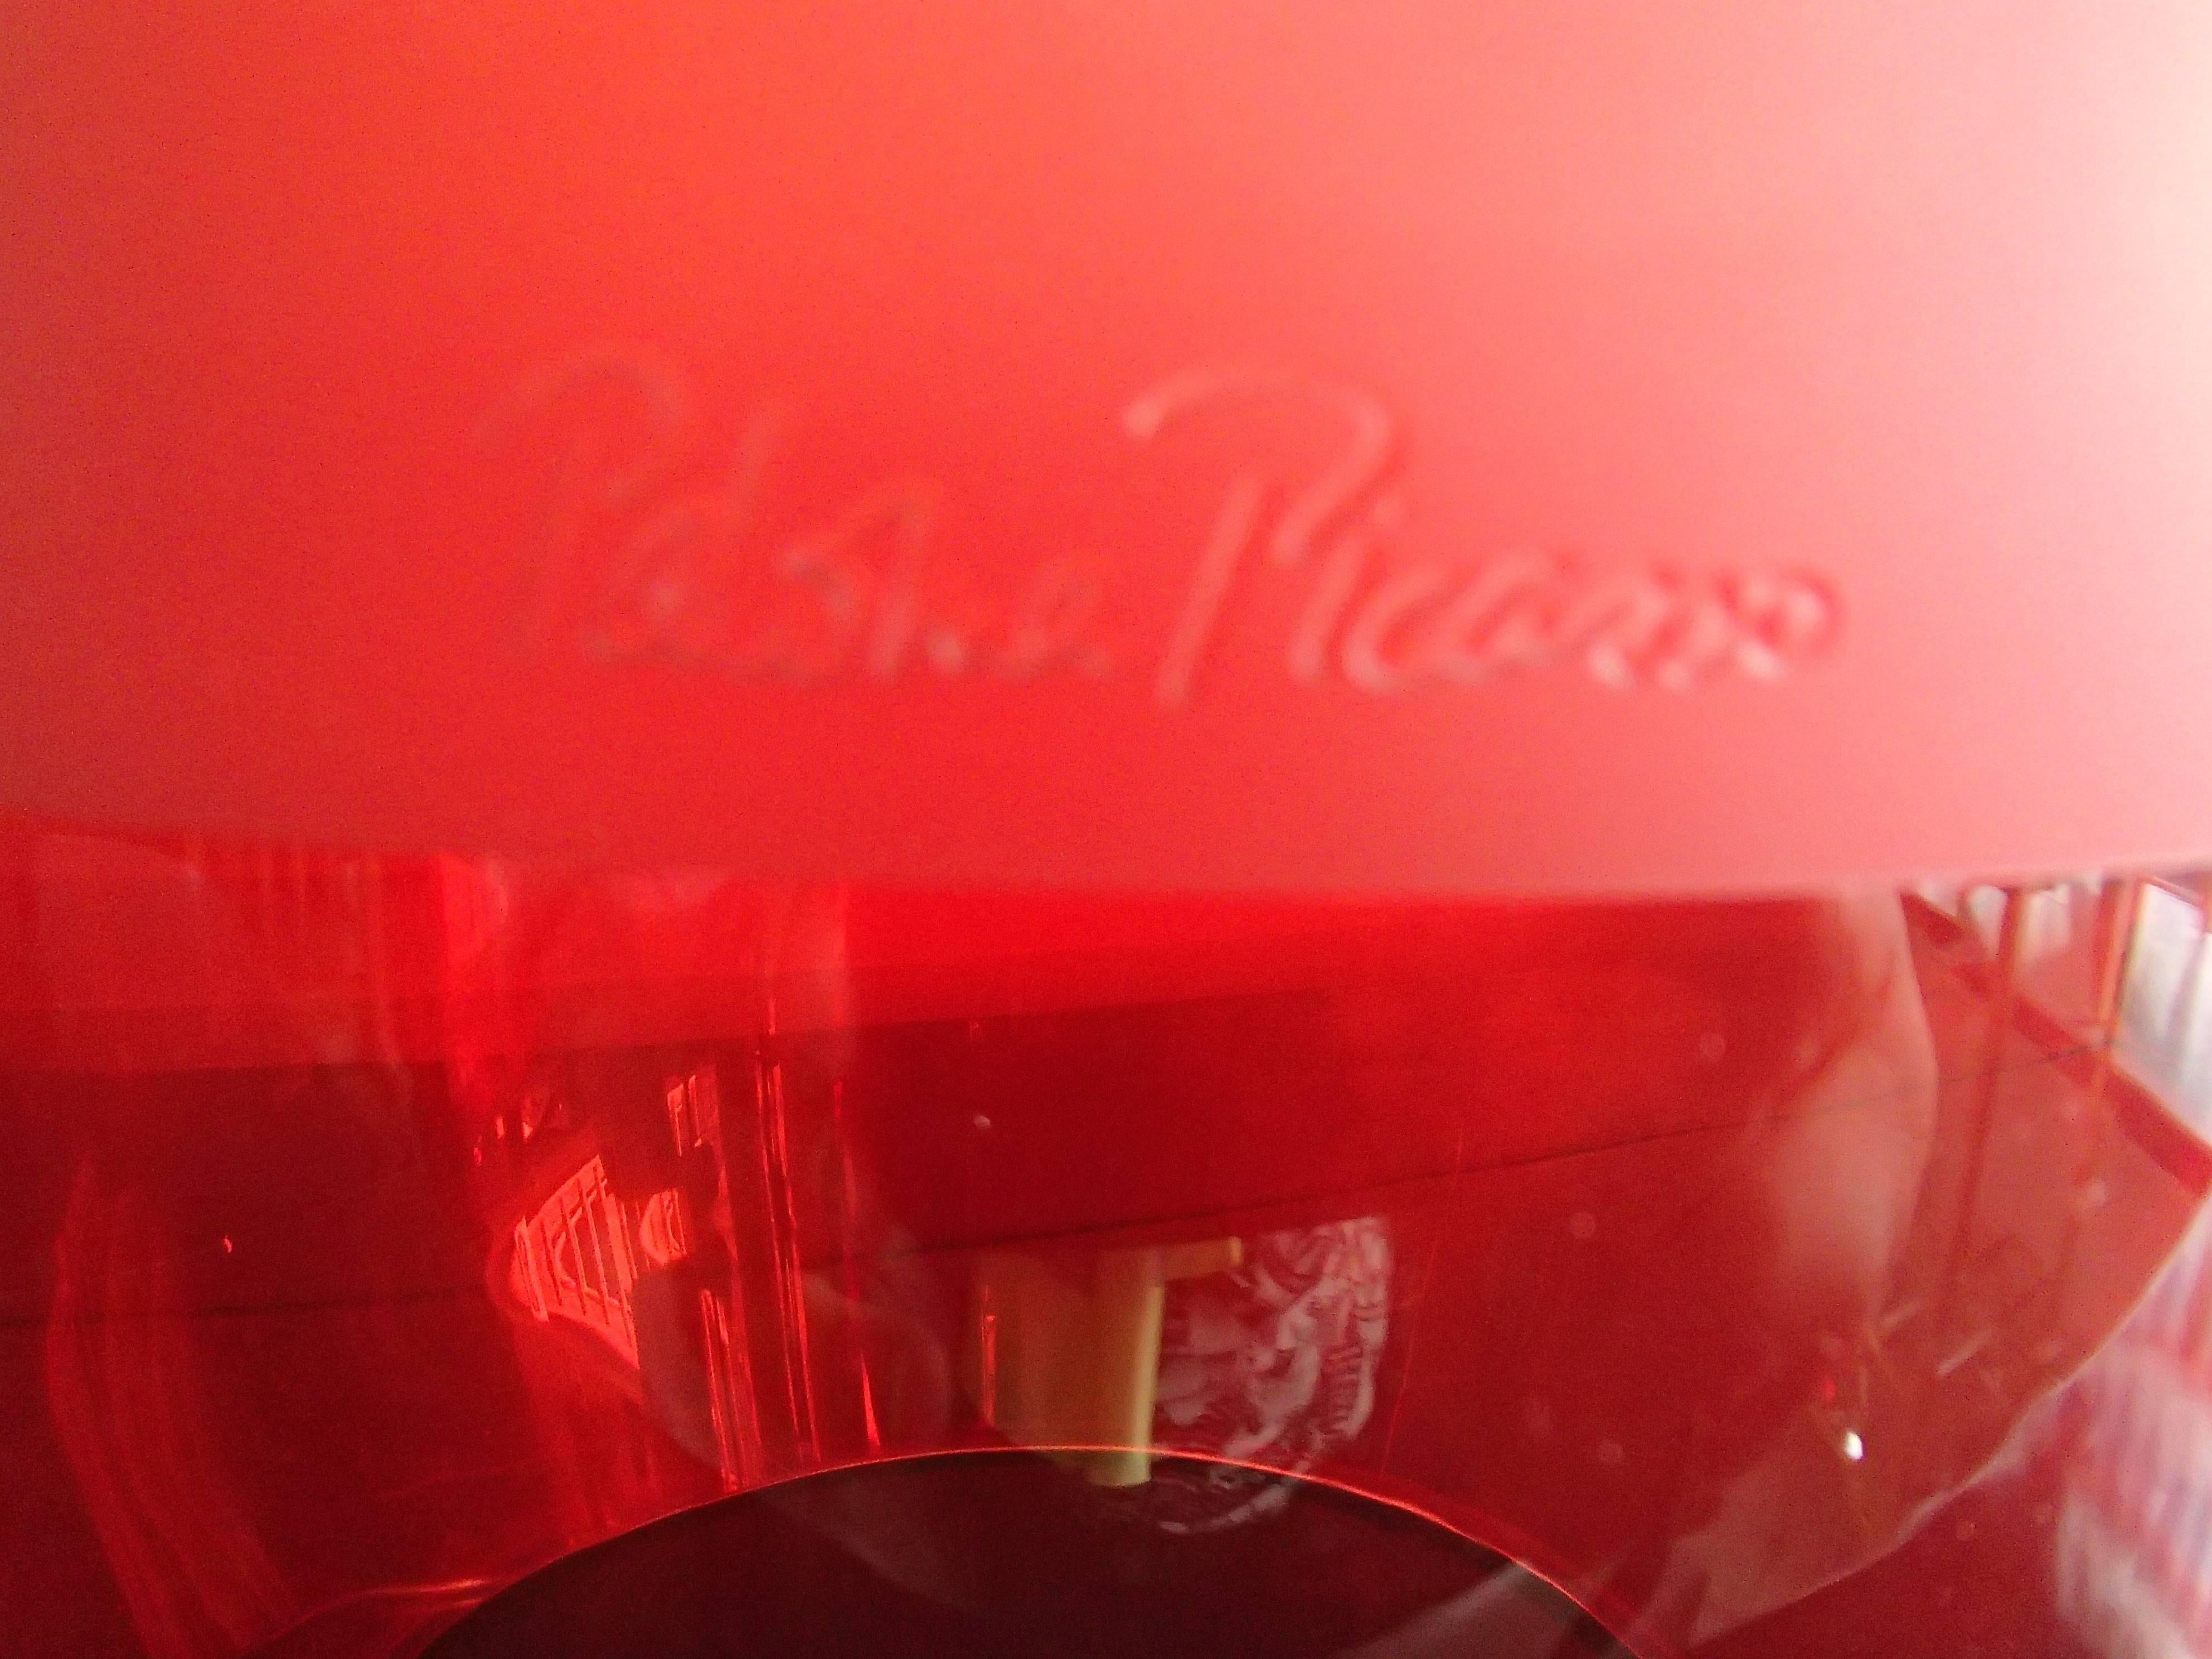 Modernes großes rotes Glas signiert von Paloma Picasso ohne Sockel kann für Trockenblumen, Kerzen verwendet werden.